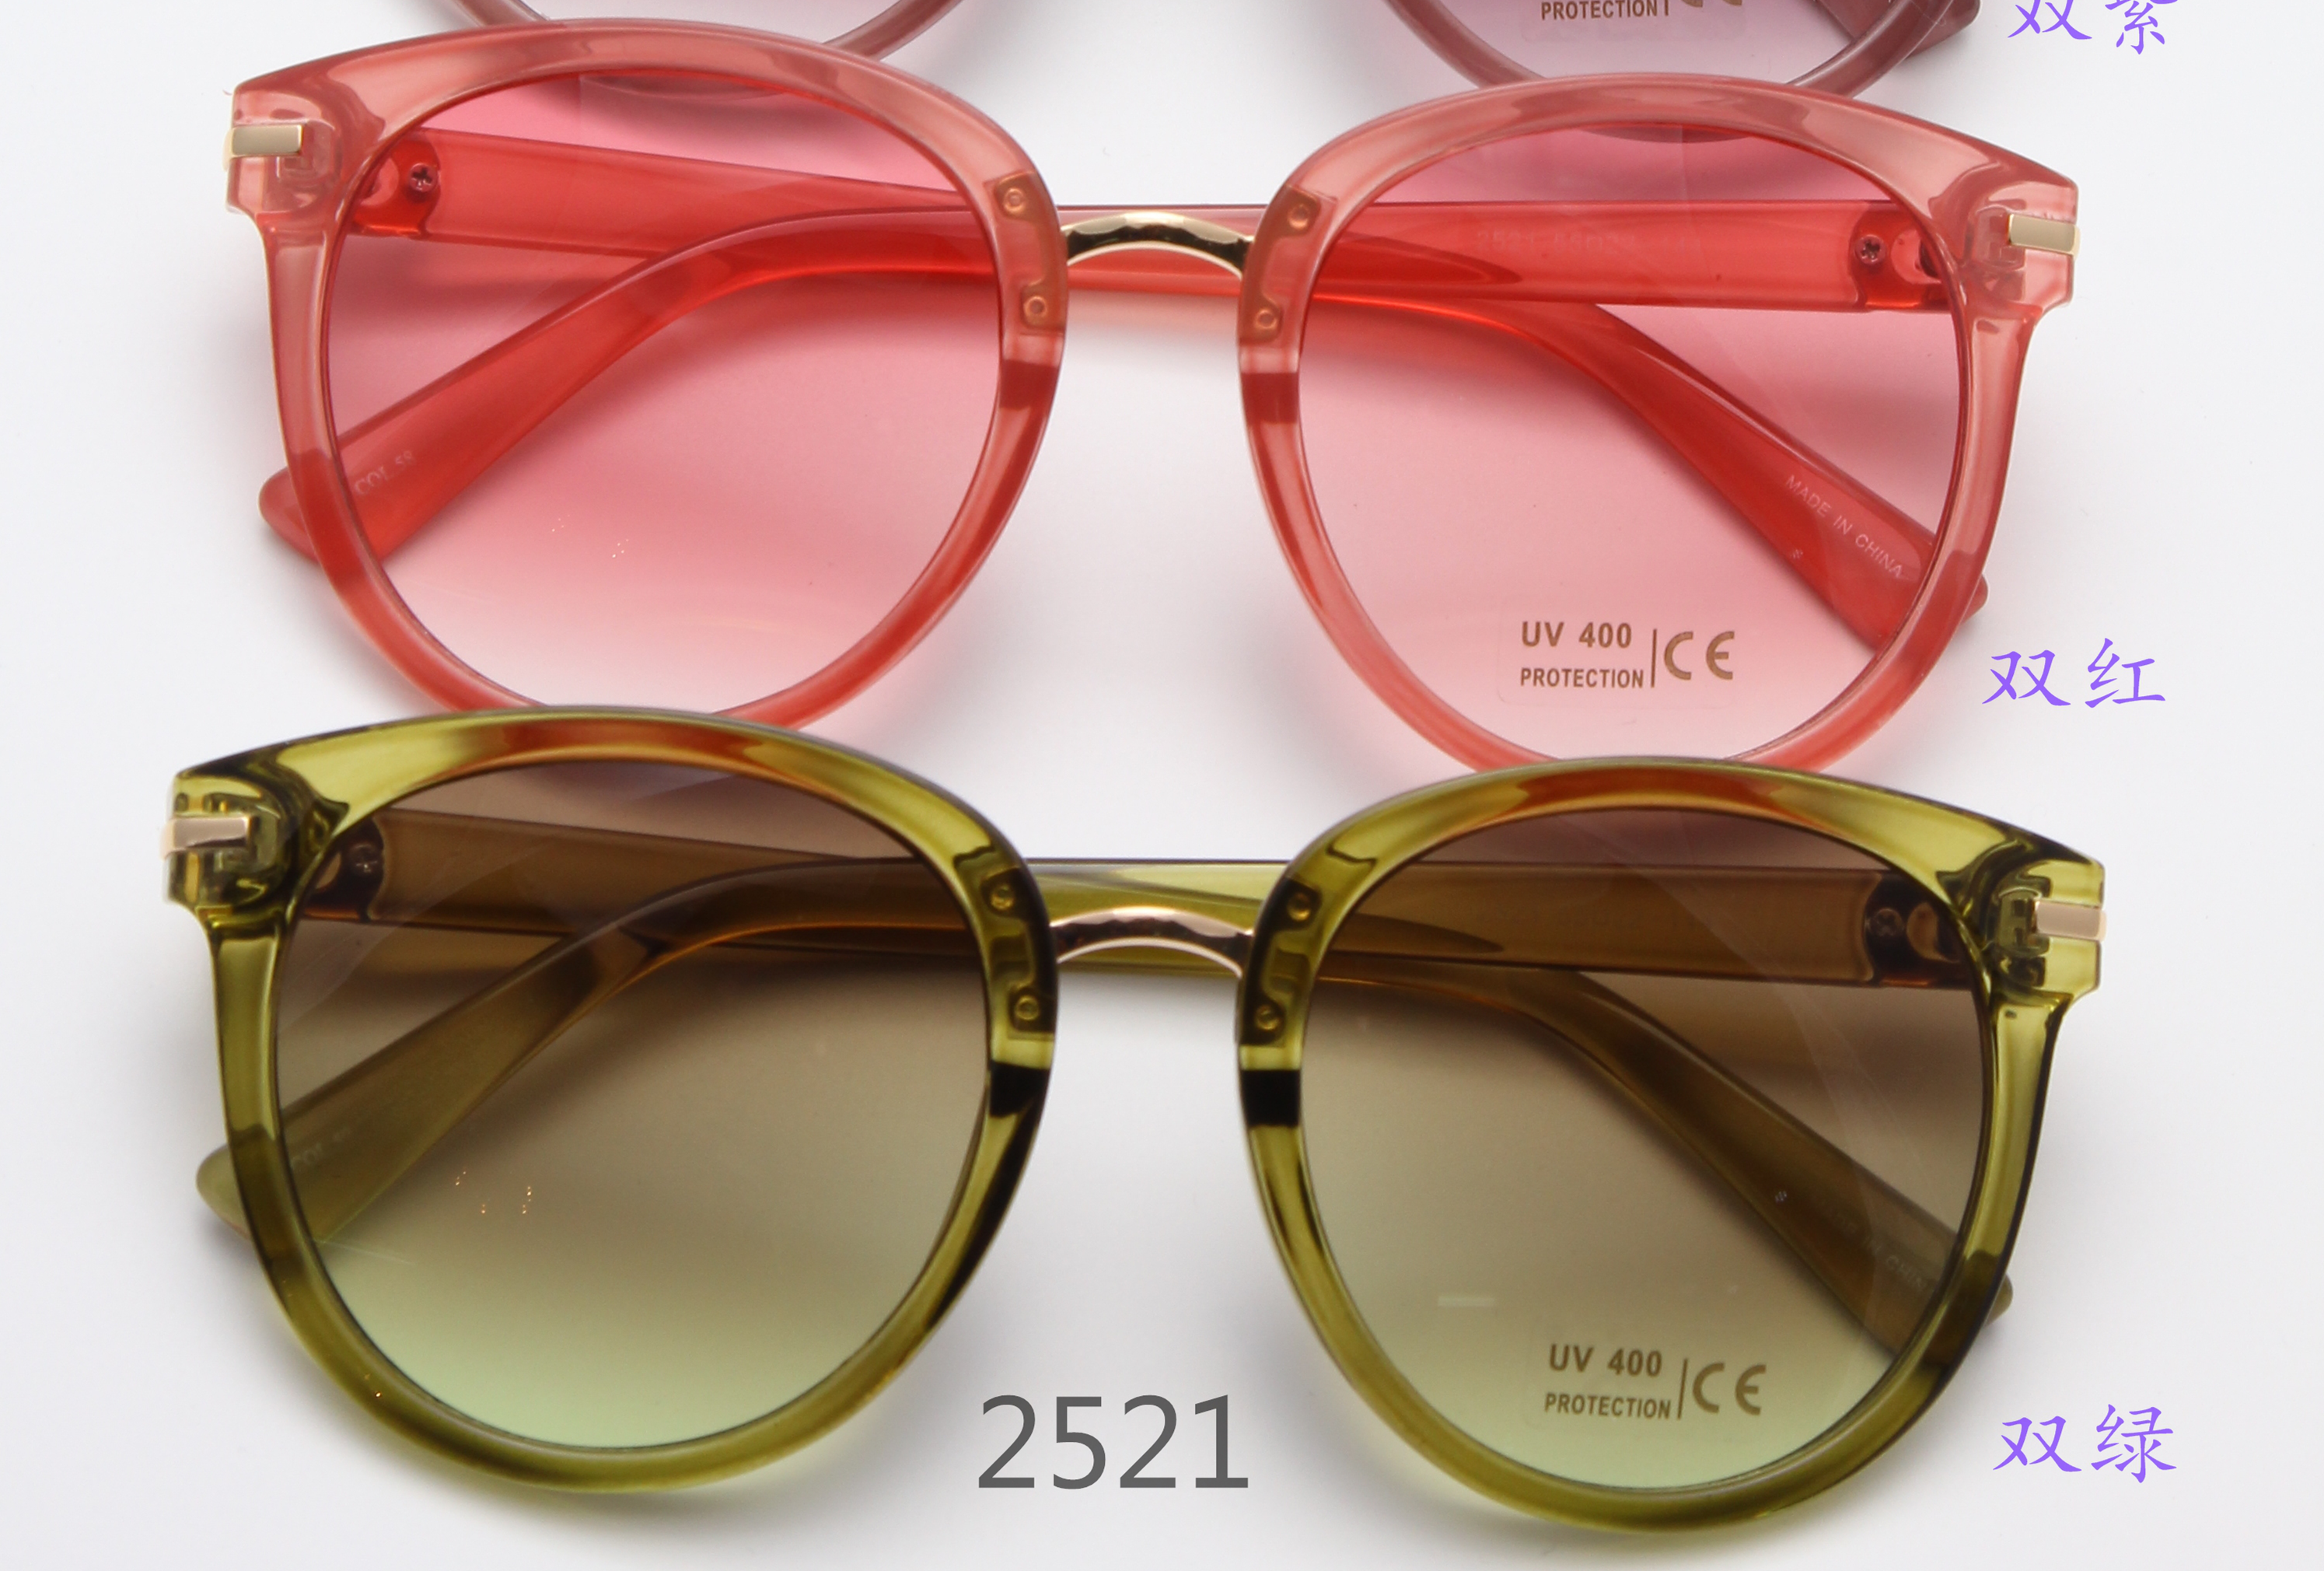 新款高档时尚太阳镜UV400镜片防紫外线眼镜防晒镜2图